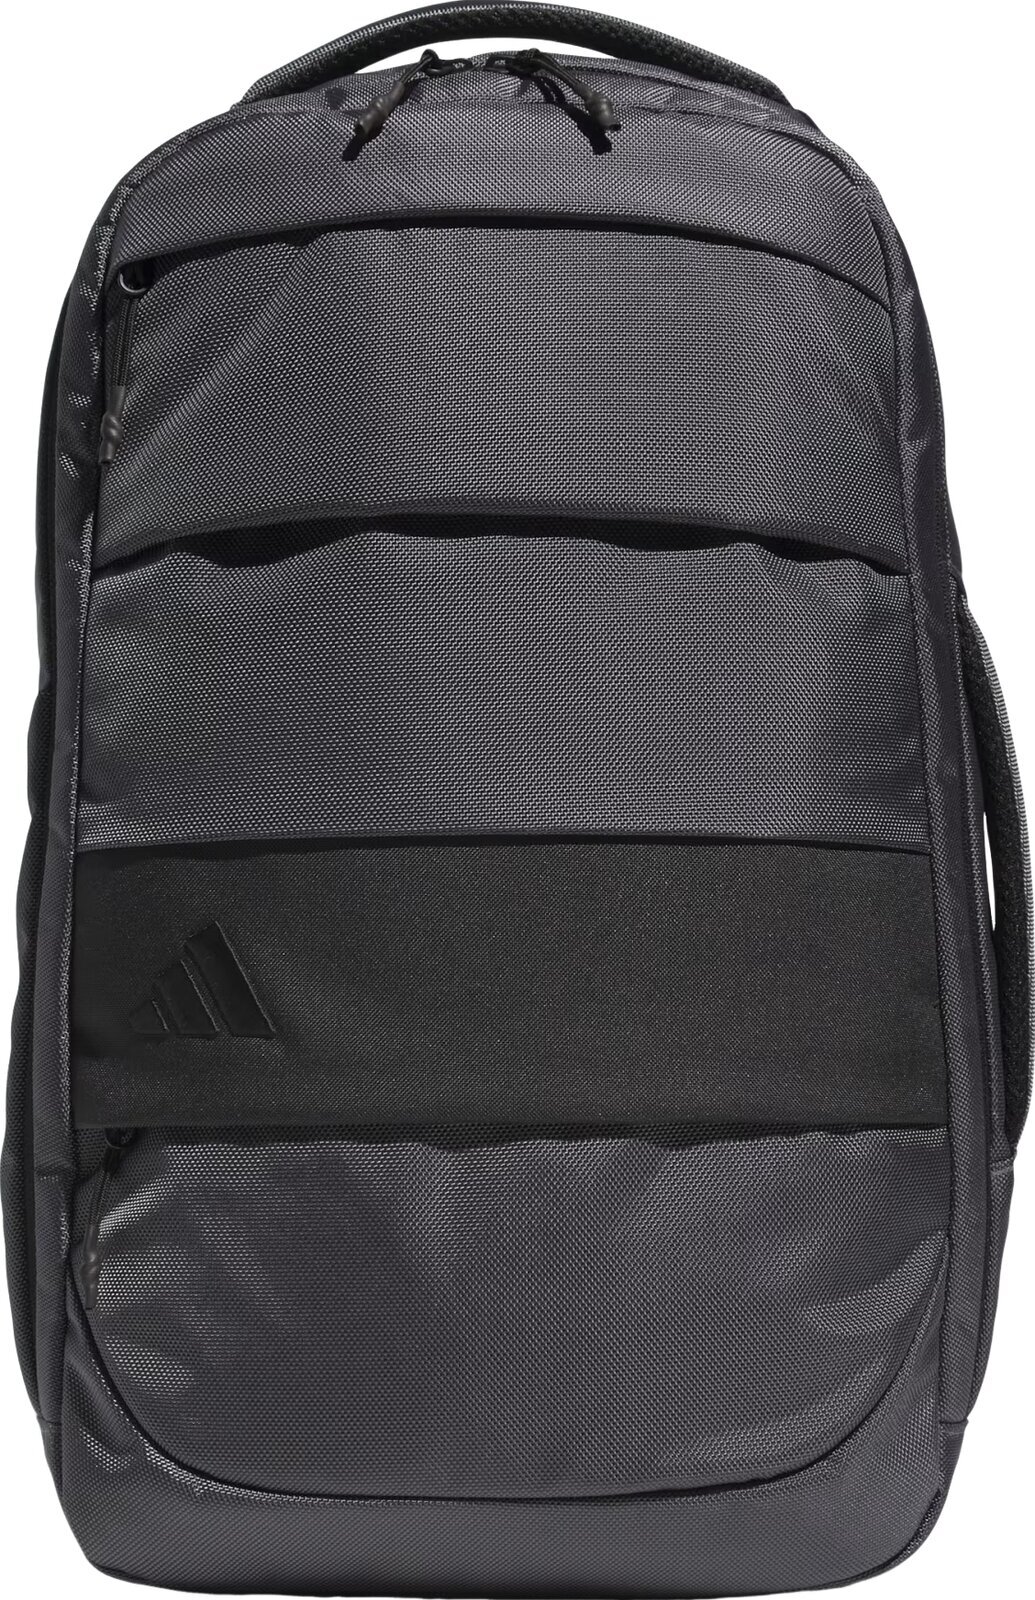 Lifestyle Rucksäck / Tasche Adidas Hybrid Backpack Grey 28,20 L Rucksack